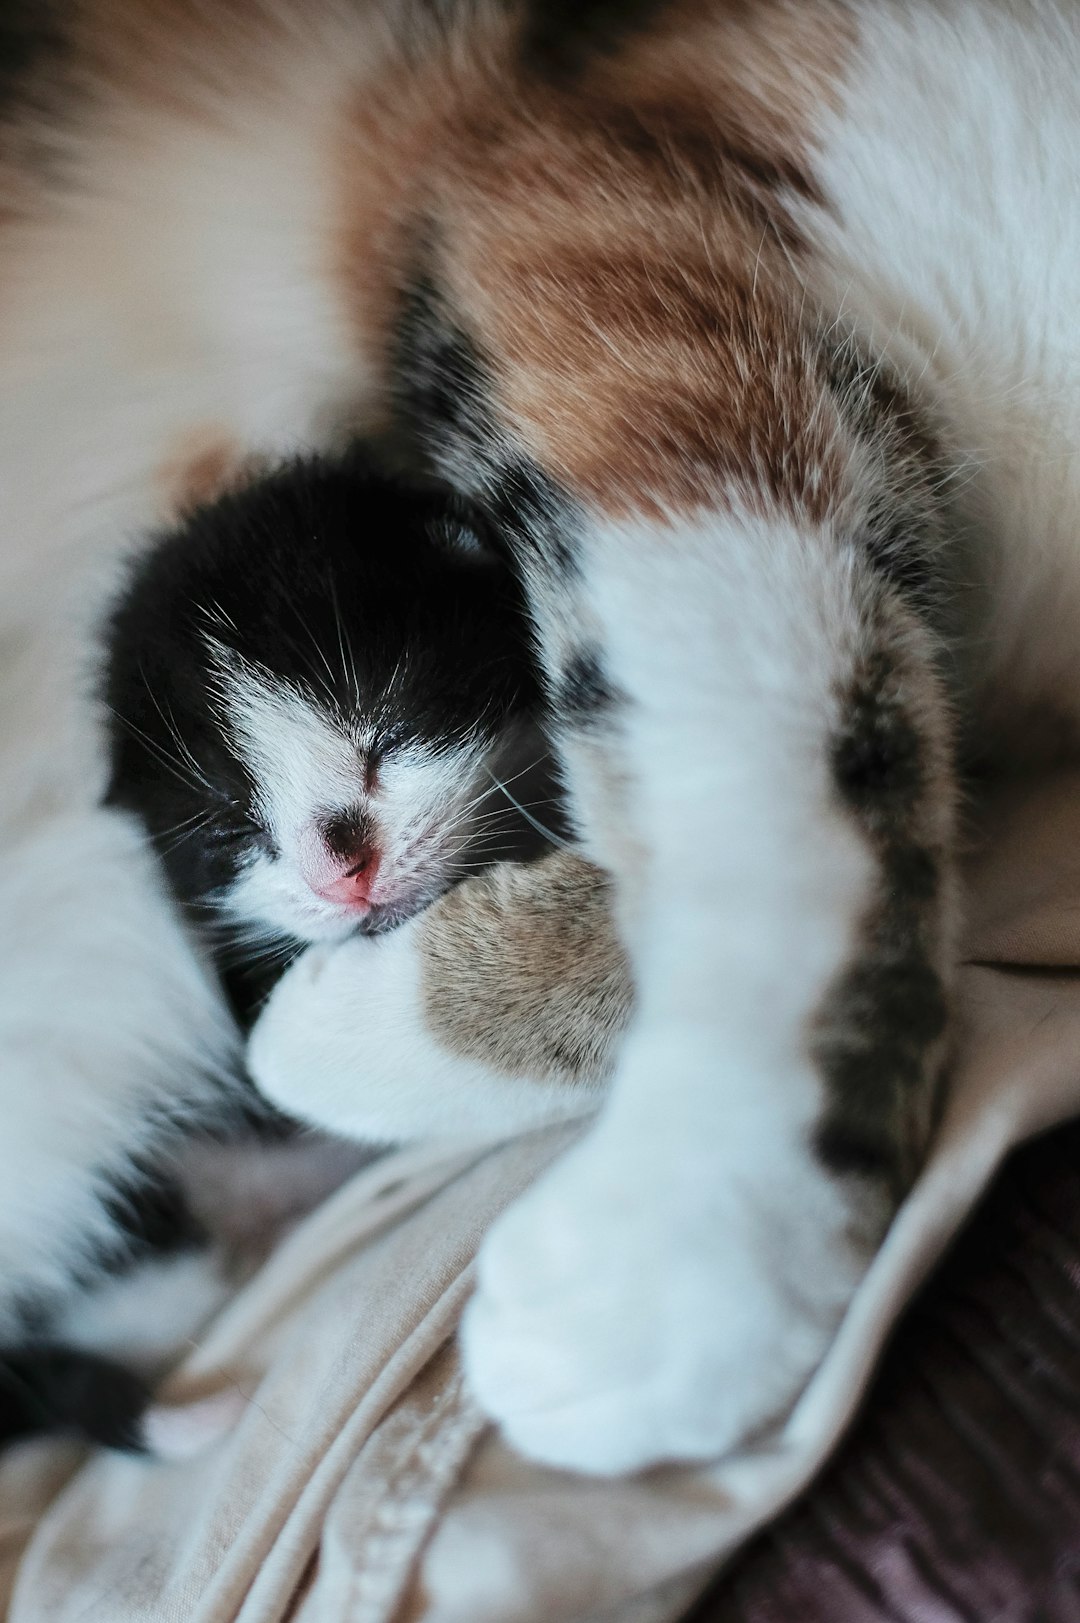 kitten sleeping with cat